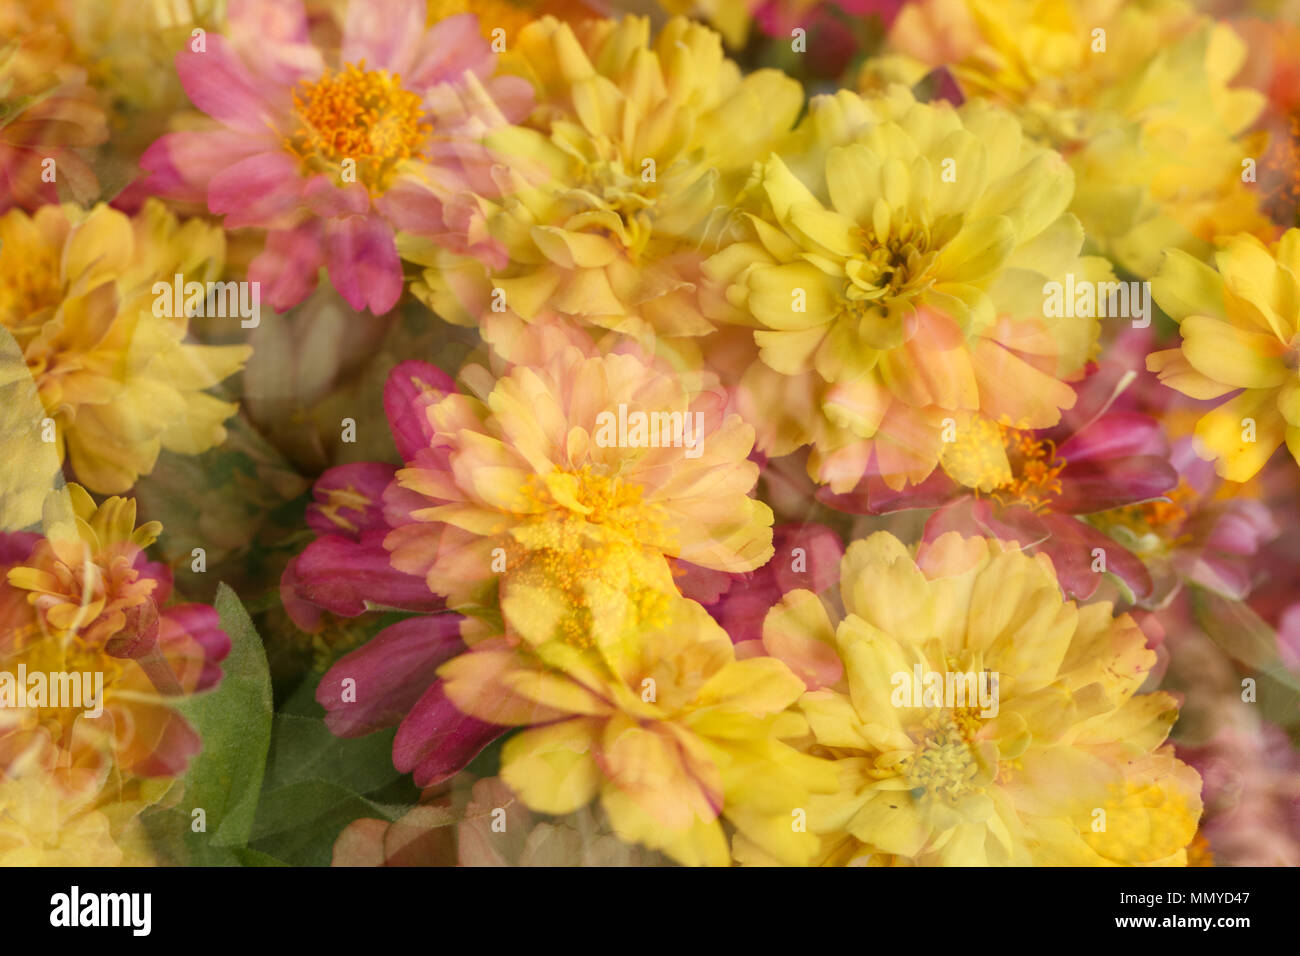 Die schöne Landschaft, die von mehreren Aufnahmen von bunten Blumen gebildet Stockfoto